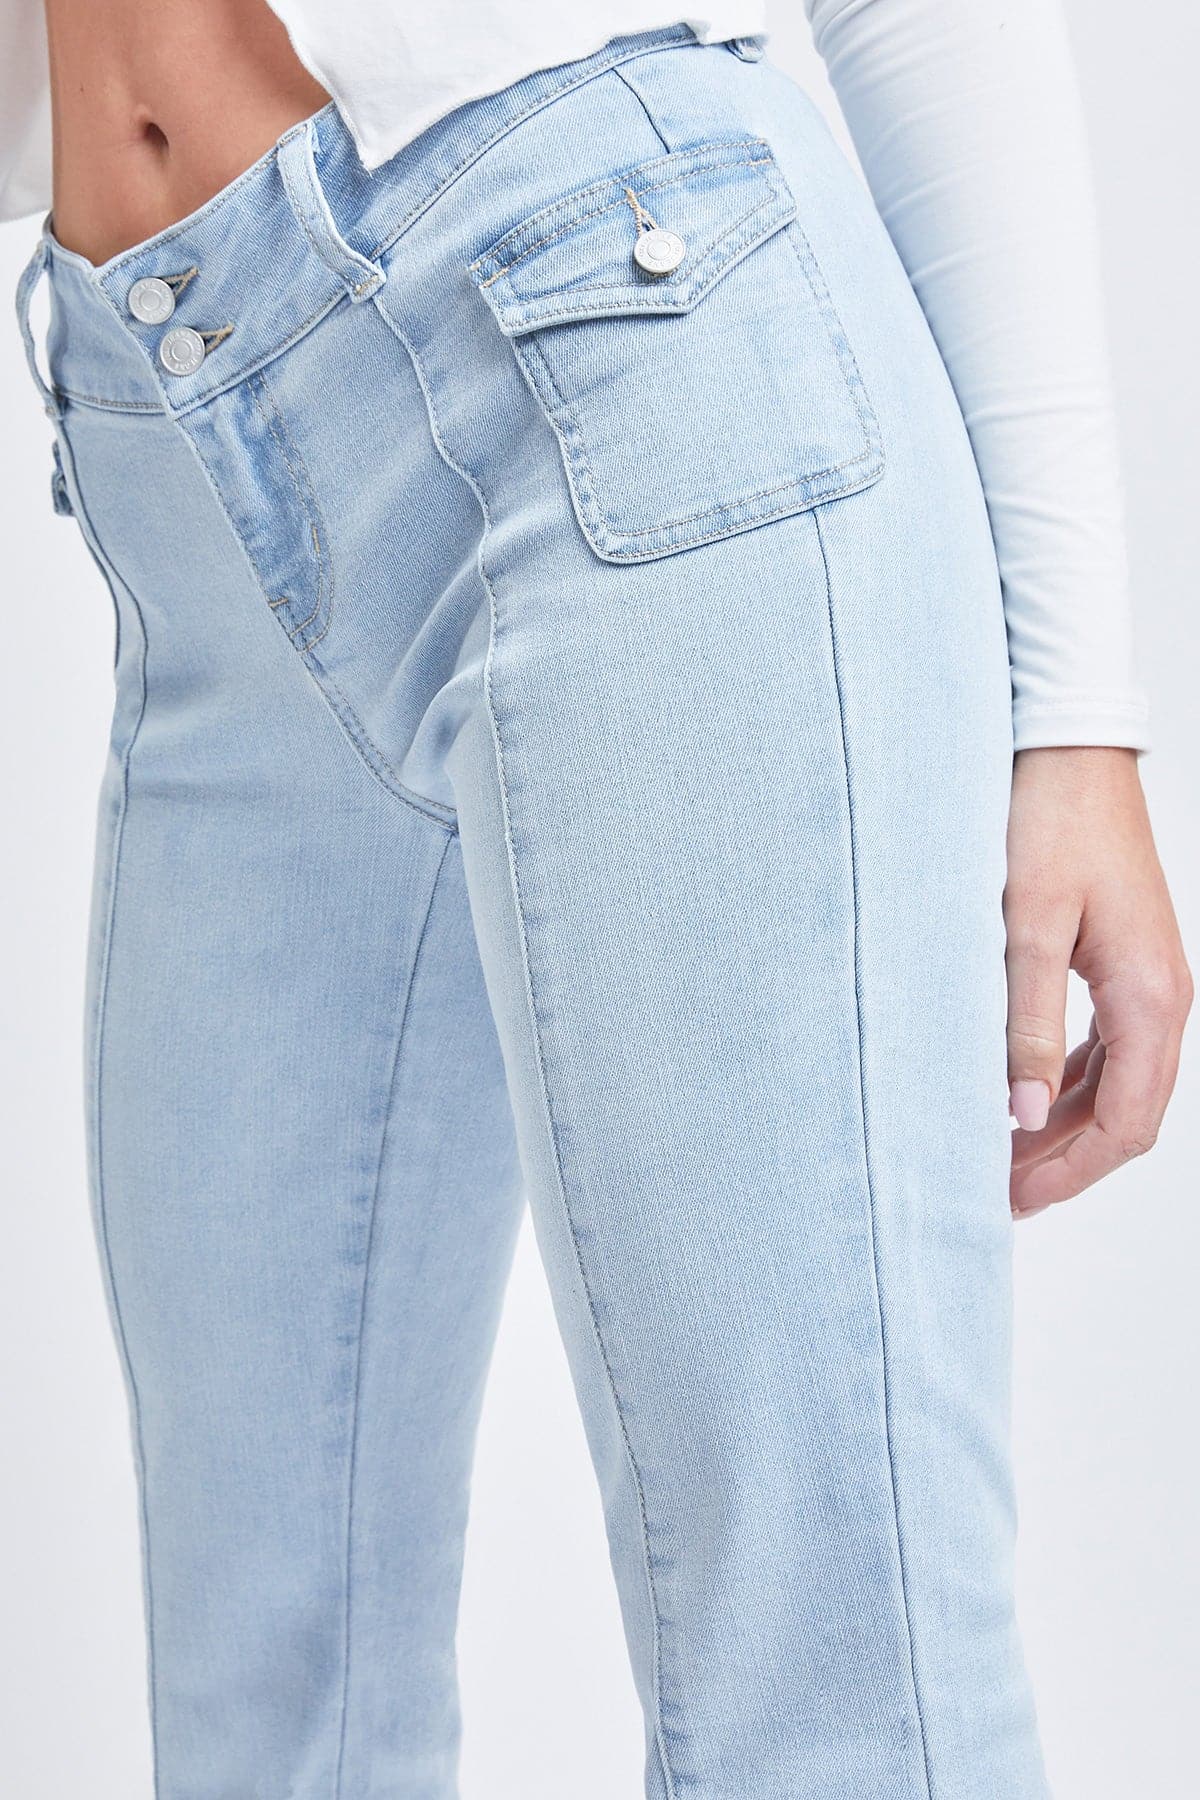 Women's Cargo Flare Jeans